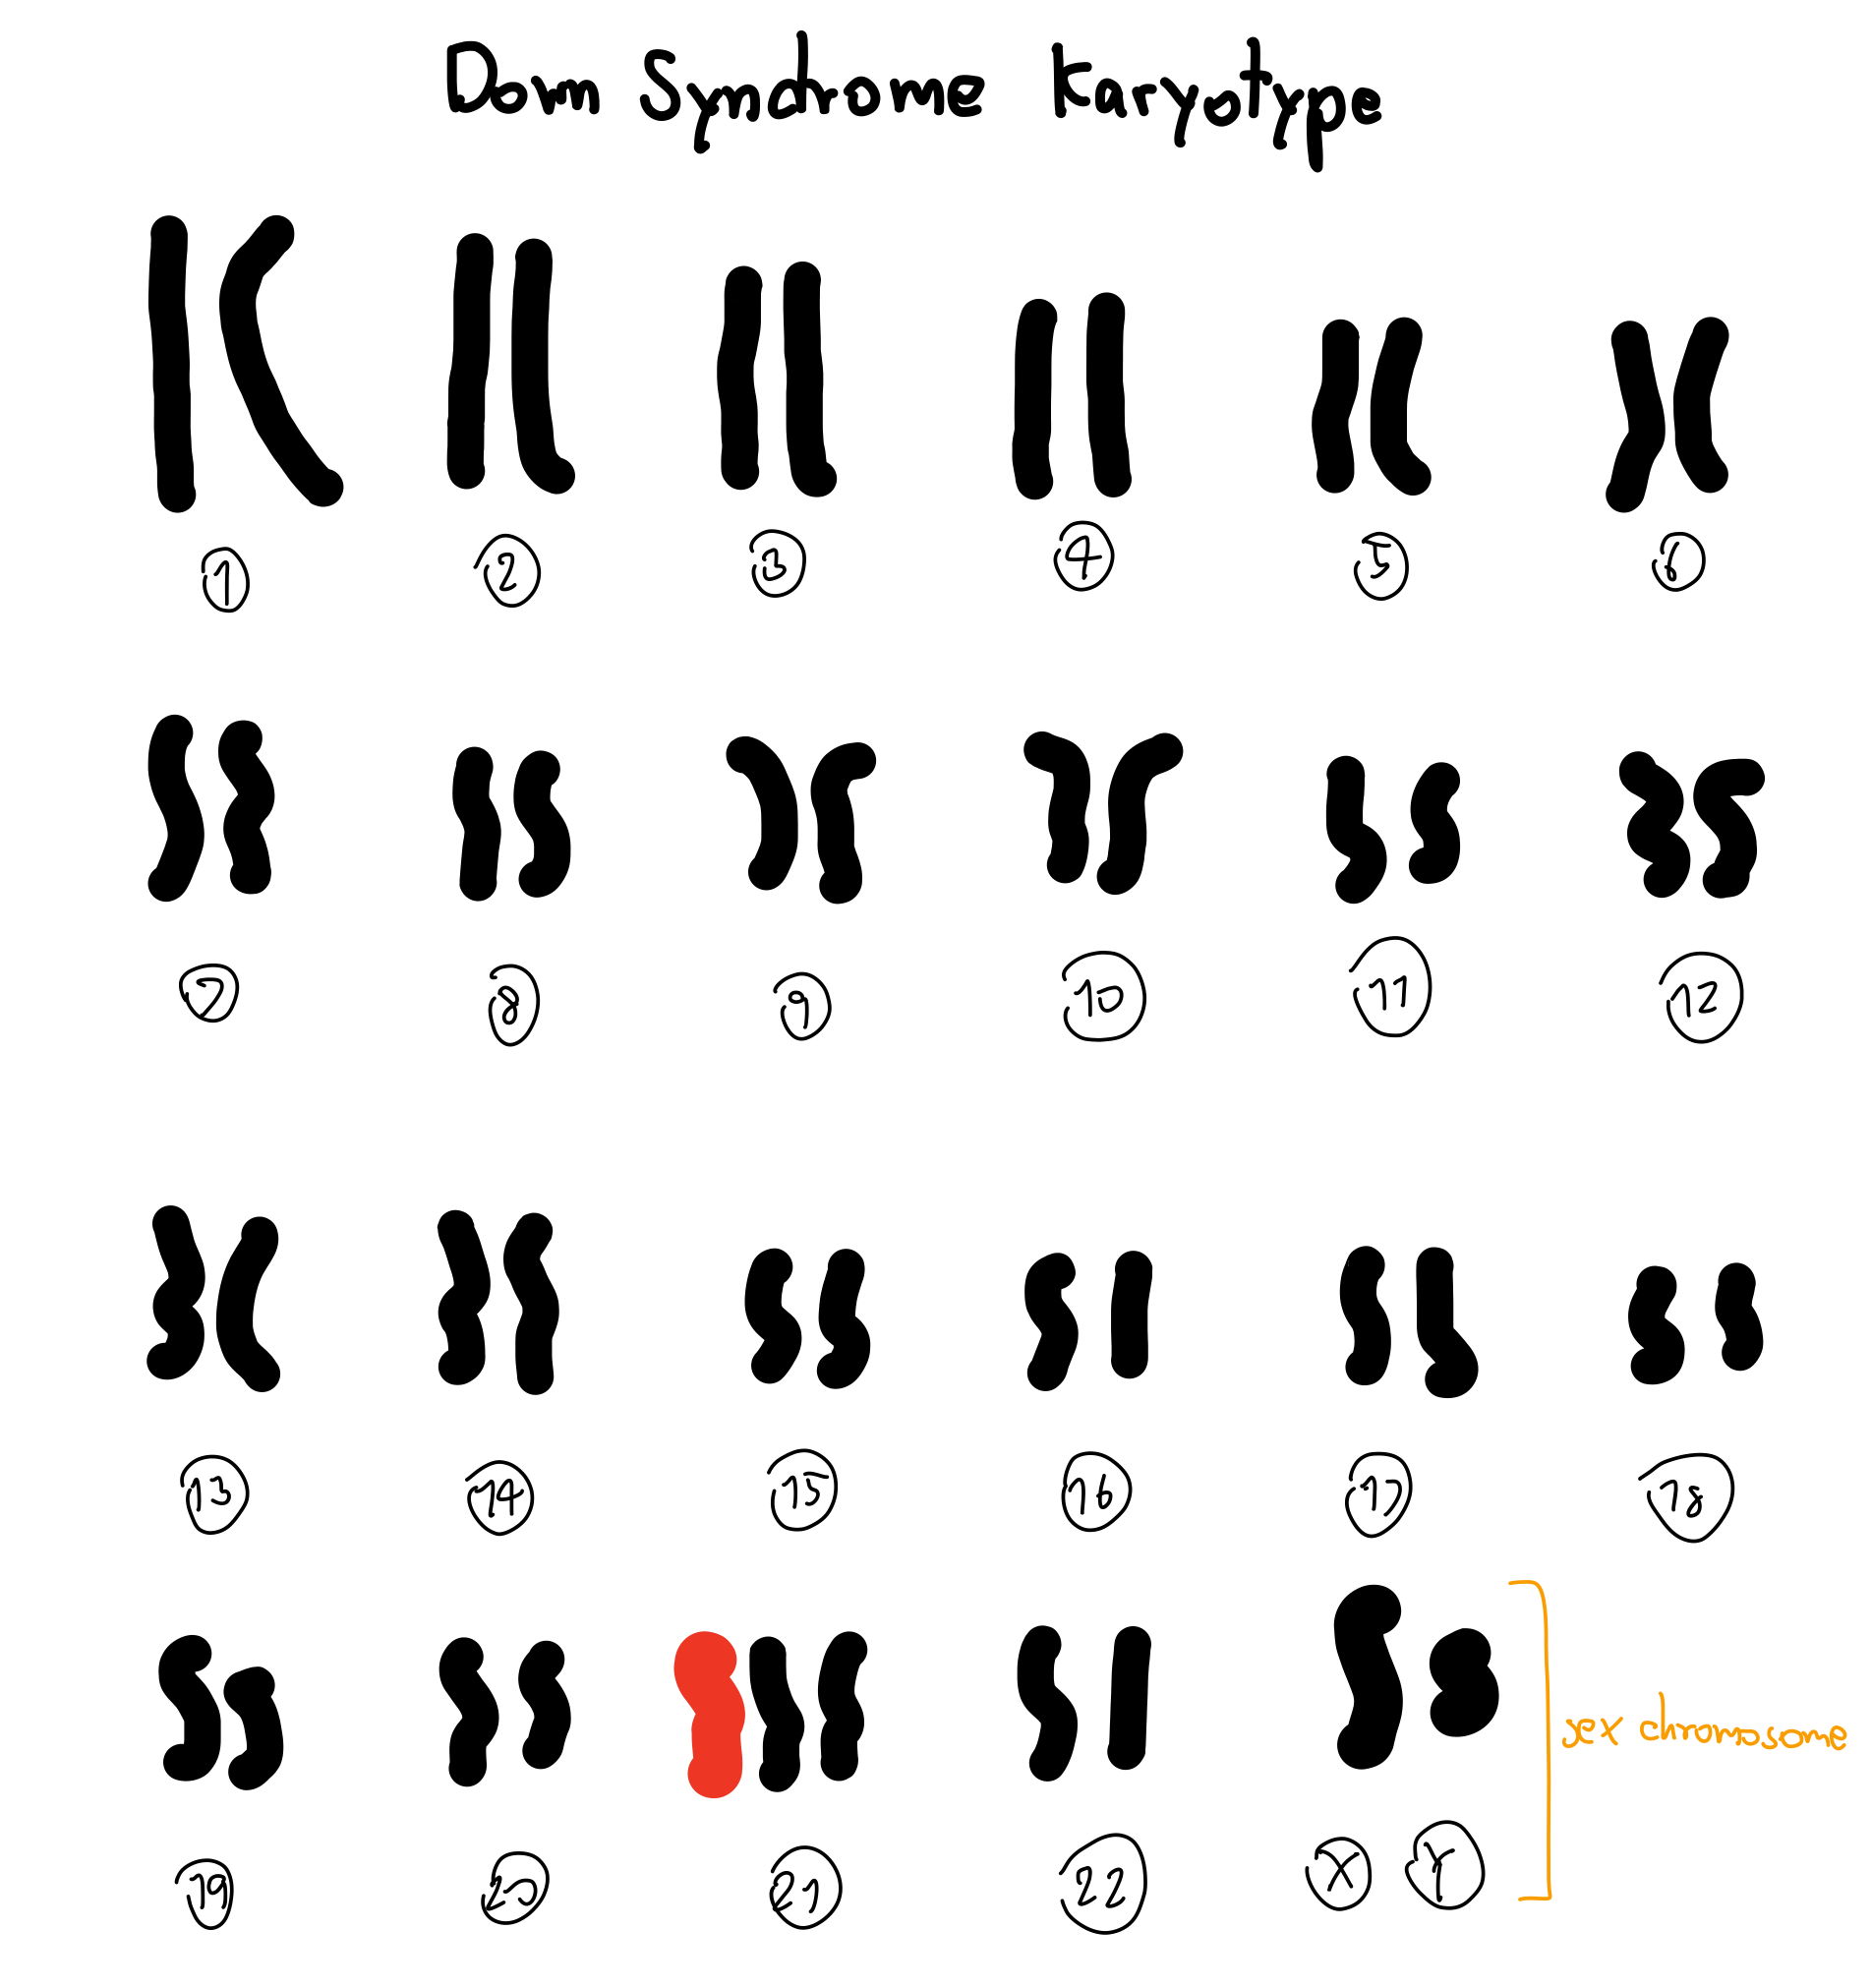 Down syndrome Karyotype